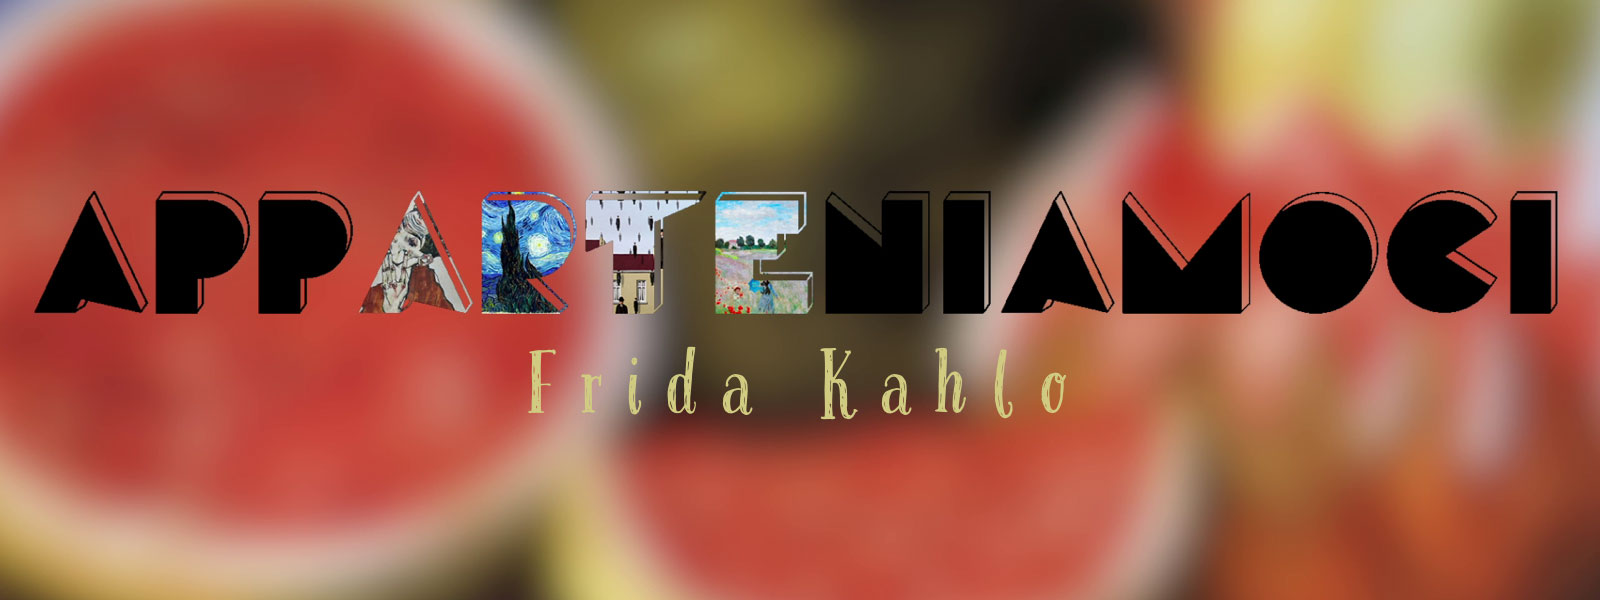 Copertina del video YouTube su Frida Kahlo della rubrica Apparteniamoci